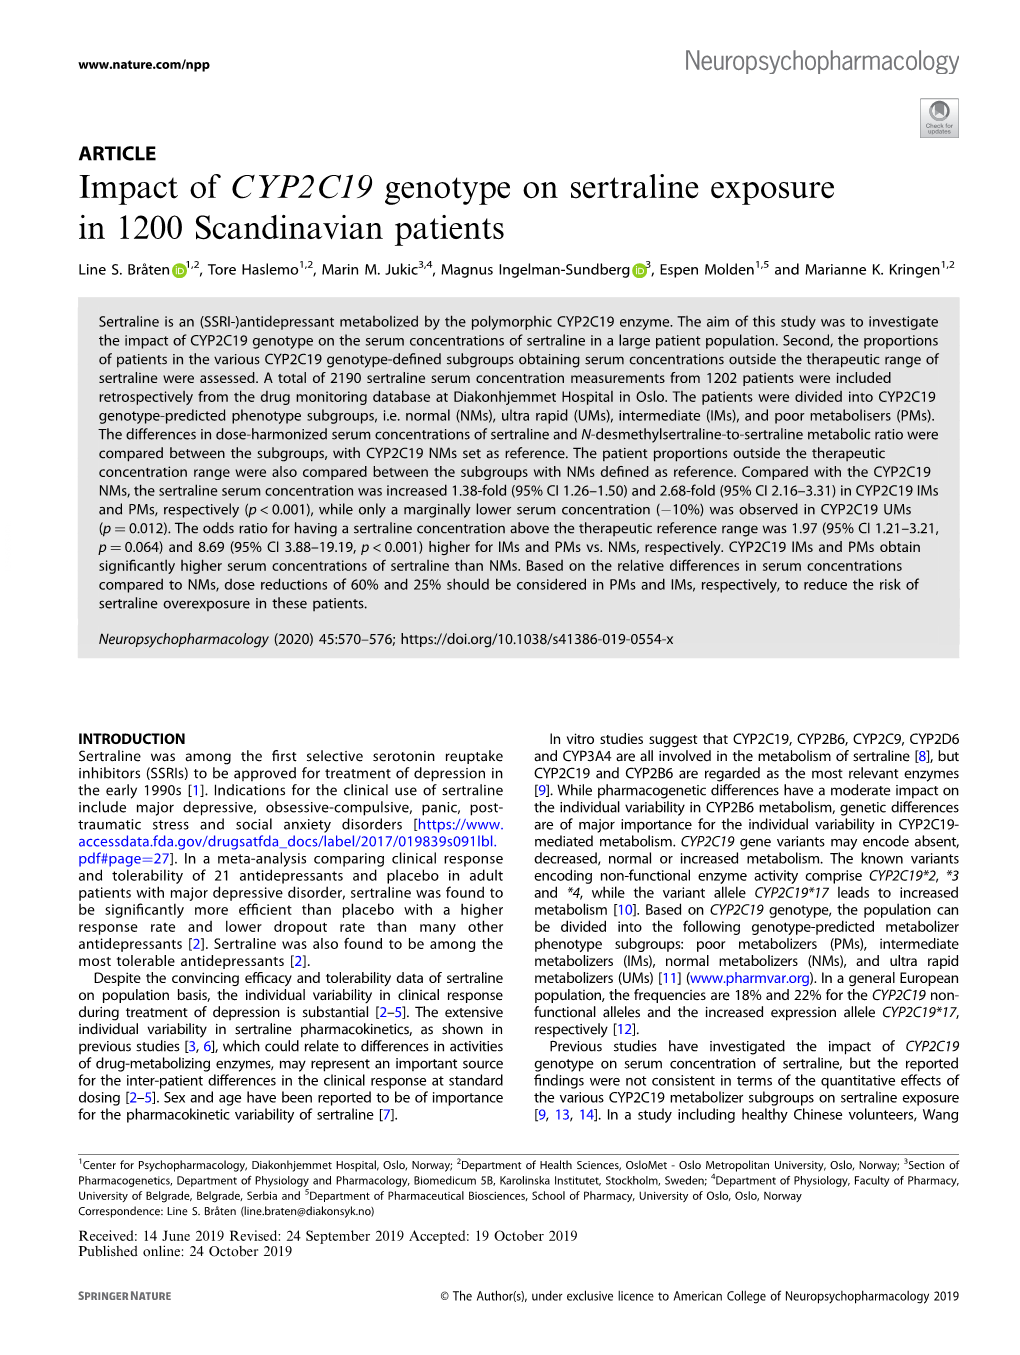 Impact of CYP2C19 Genotype on Sertraline Exposure in 1200 Scandinavian Patients